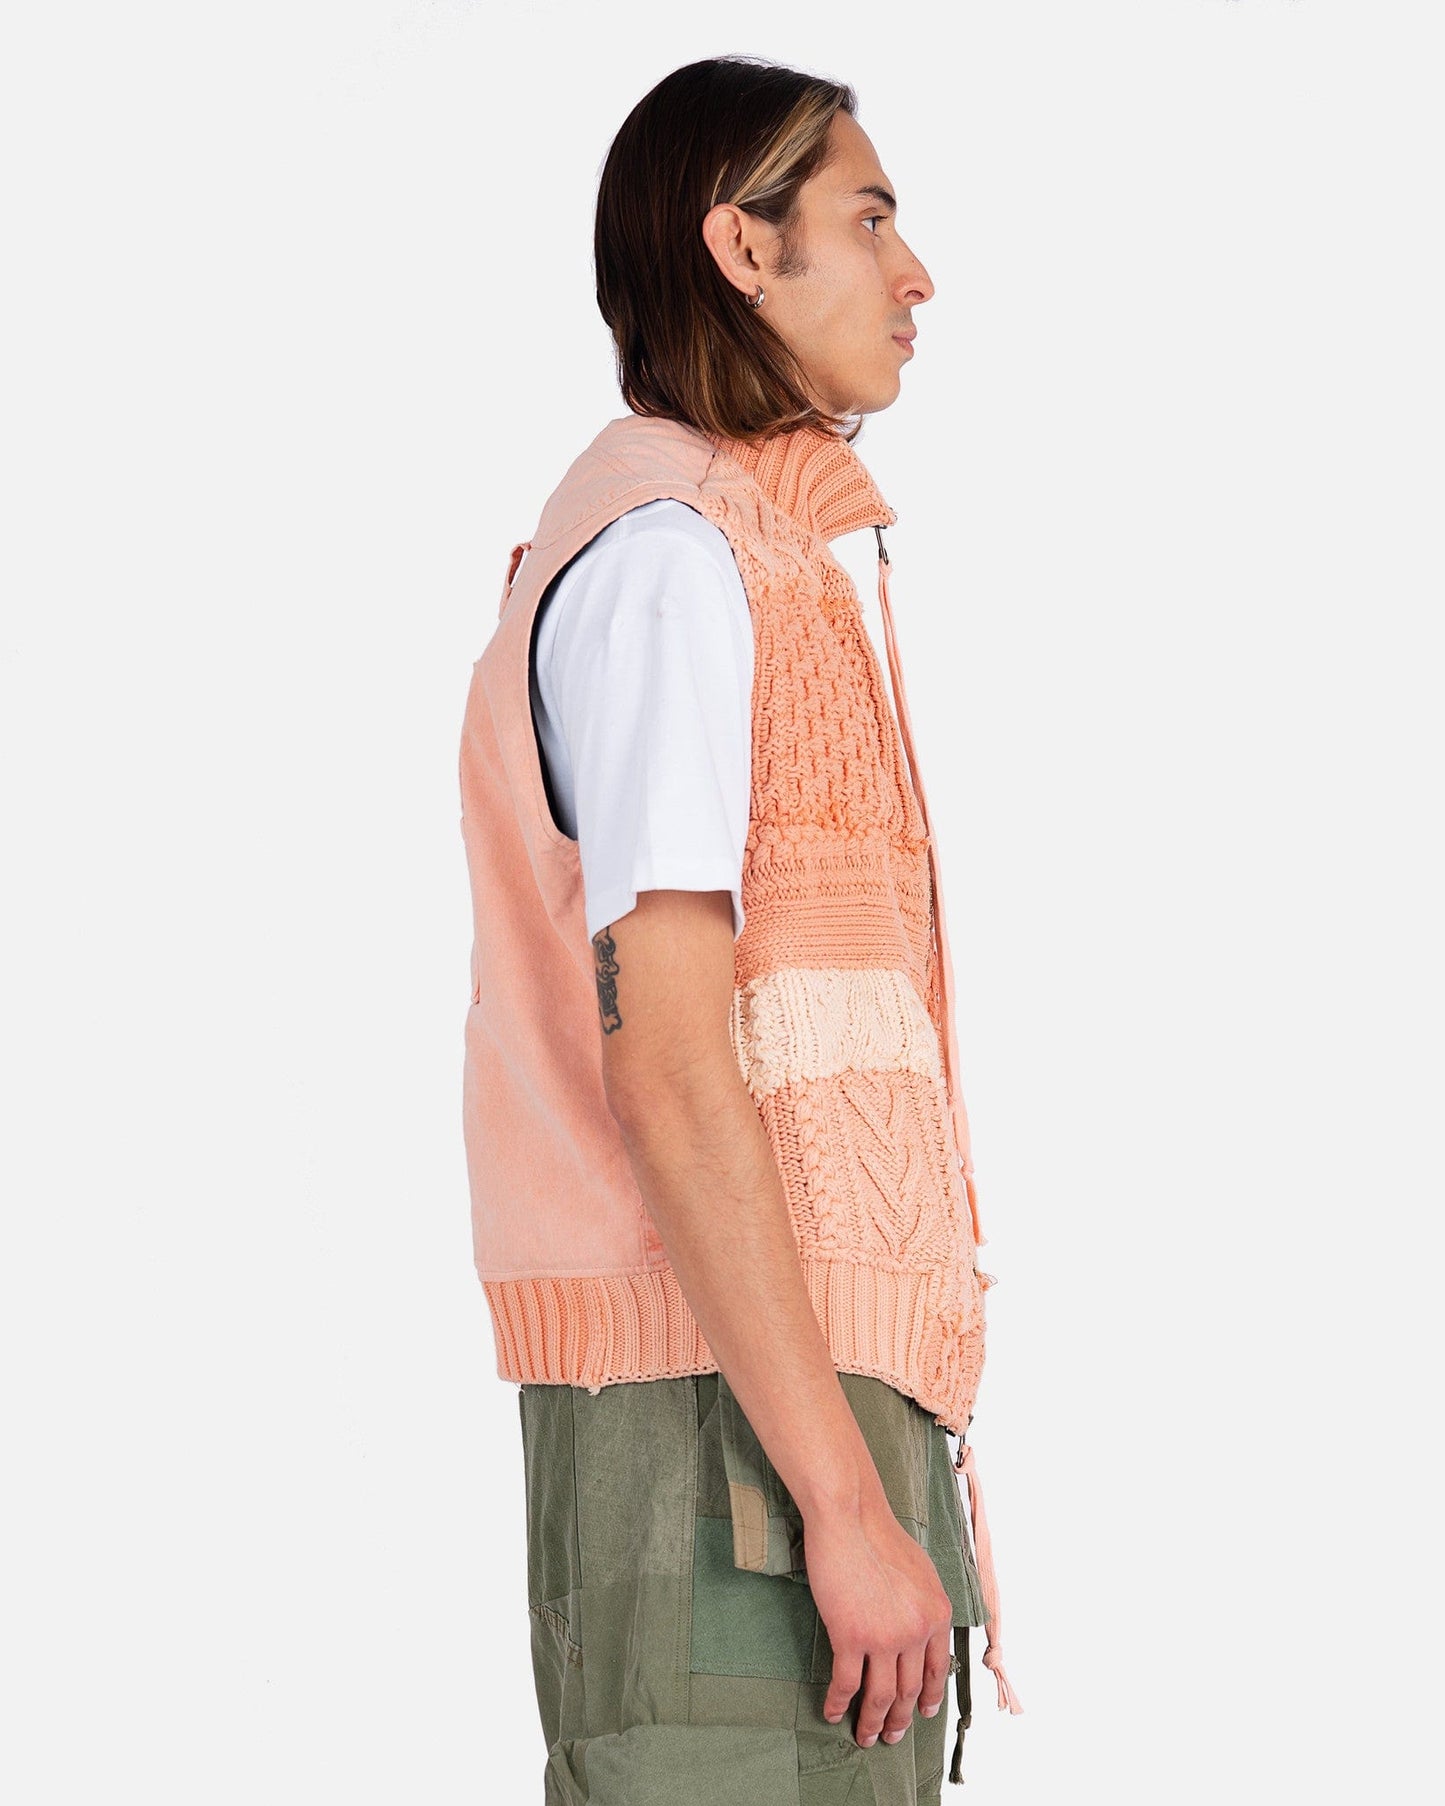 Greg Lauren Fisherman Zip Vest in Pink